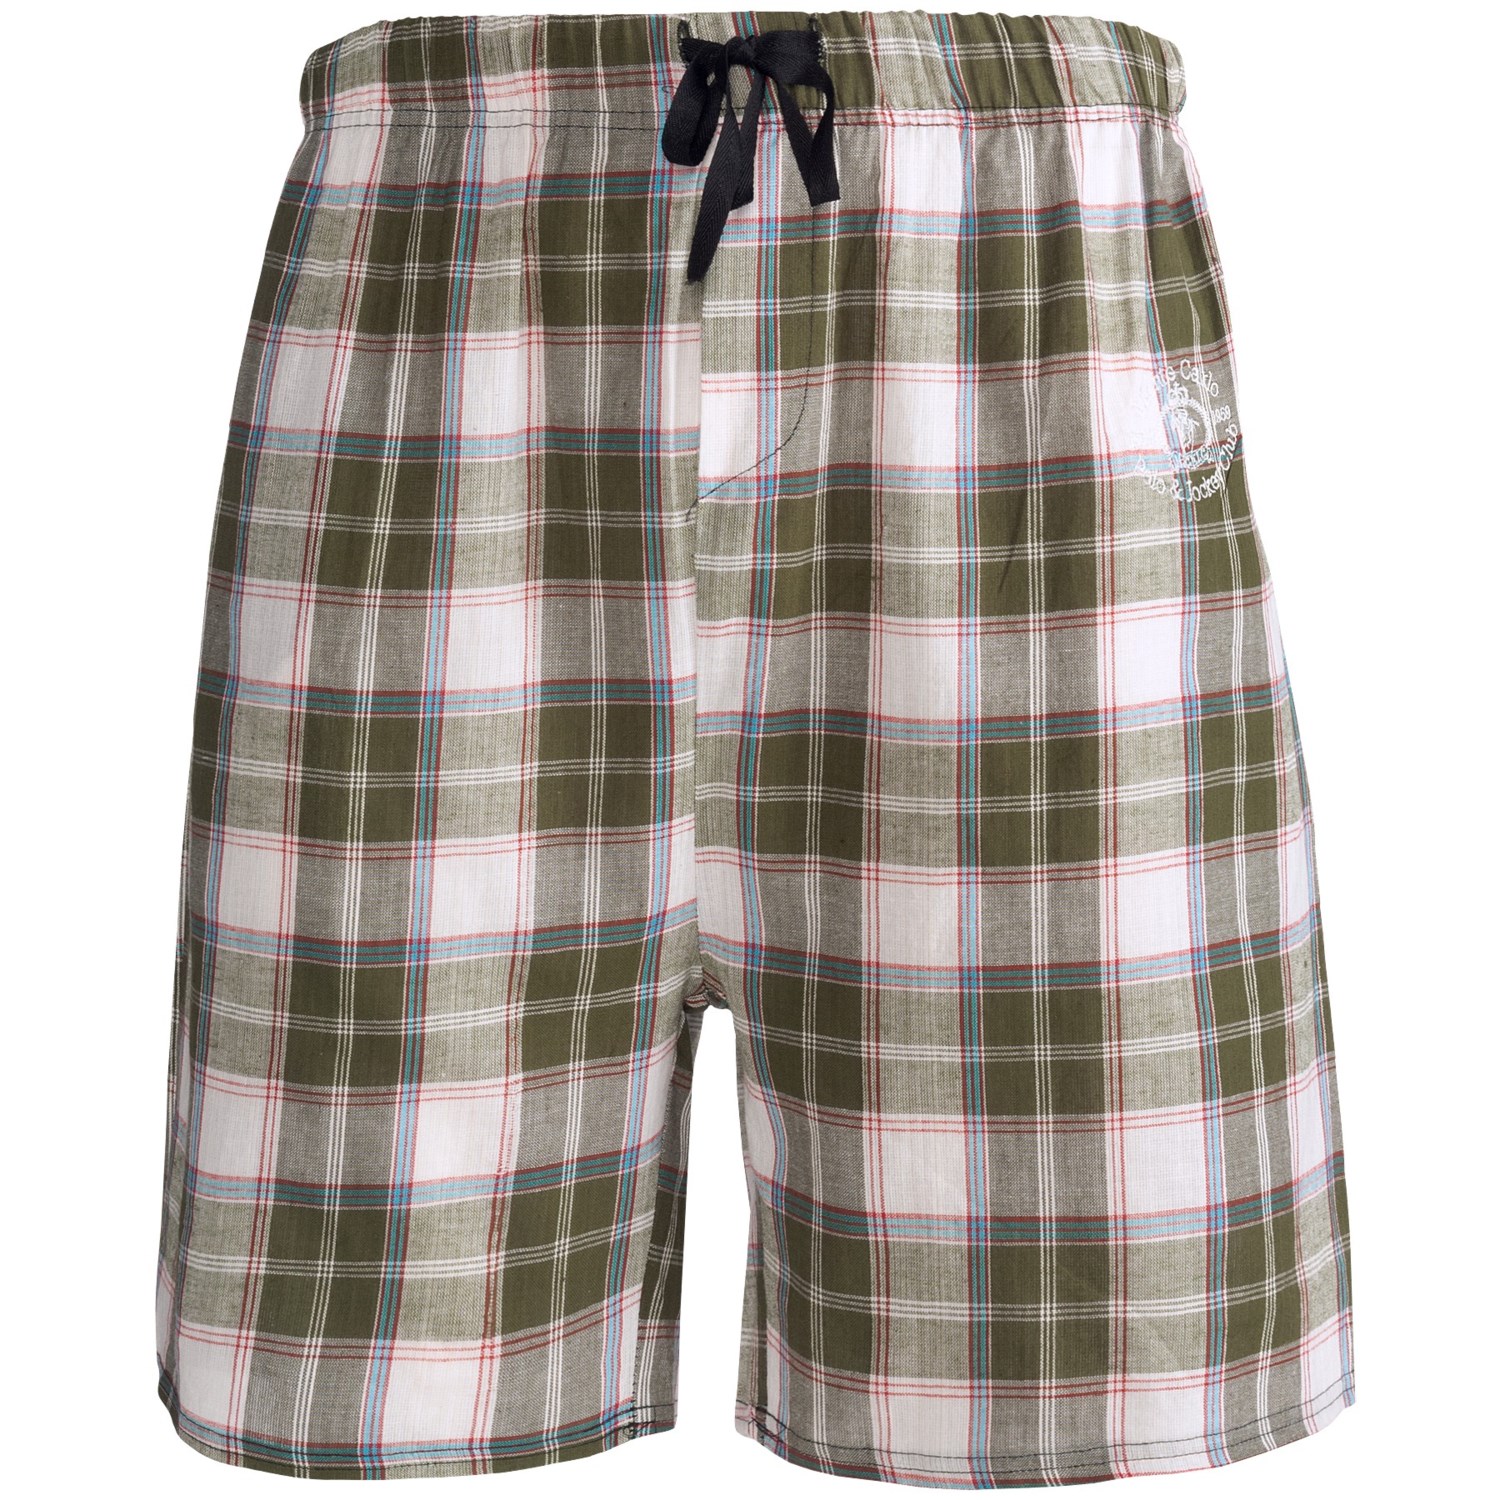 Monte Carlo Polo & Jockey Club Plaid Shorts - Cotton (For Men) - Save 44%